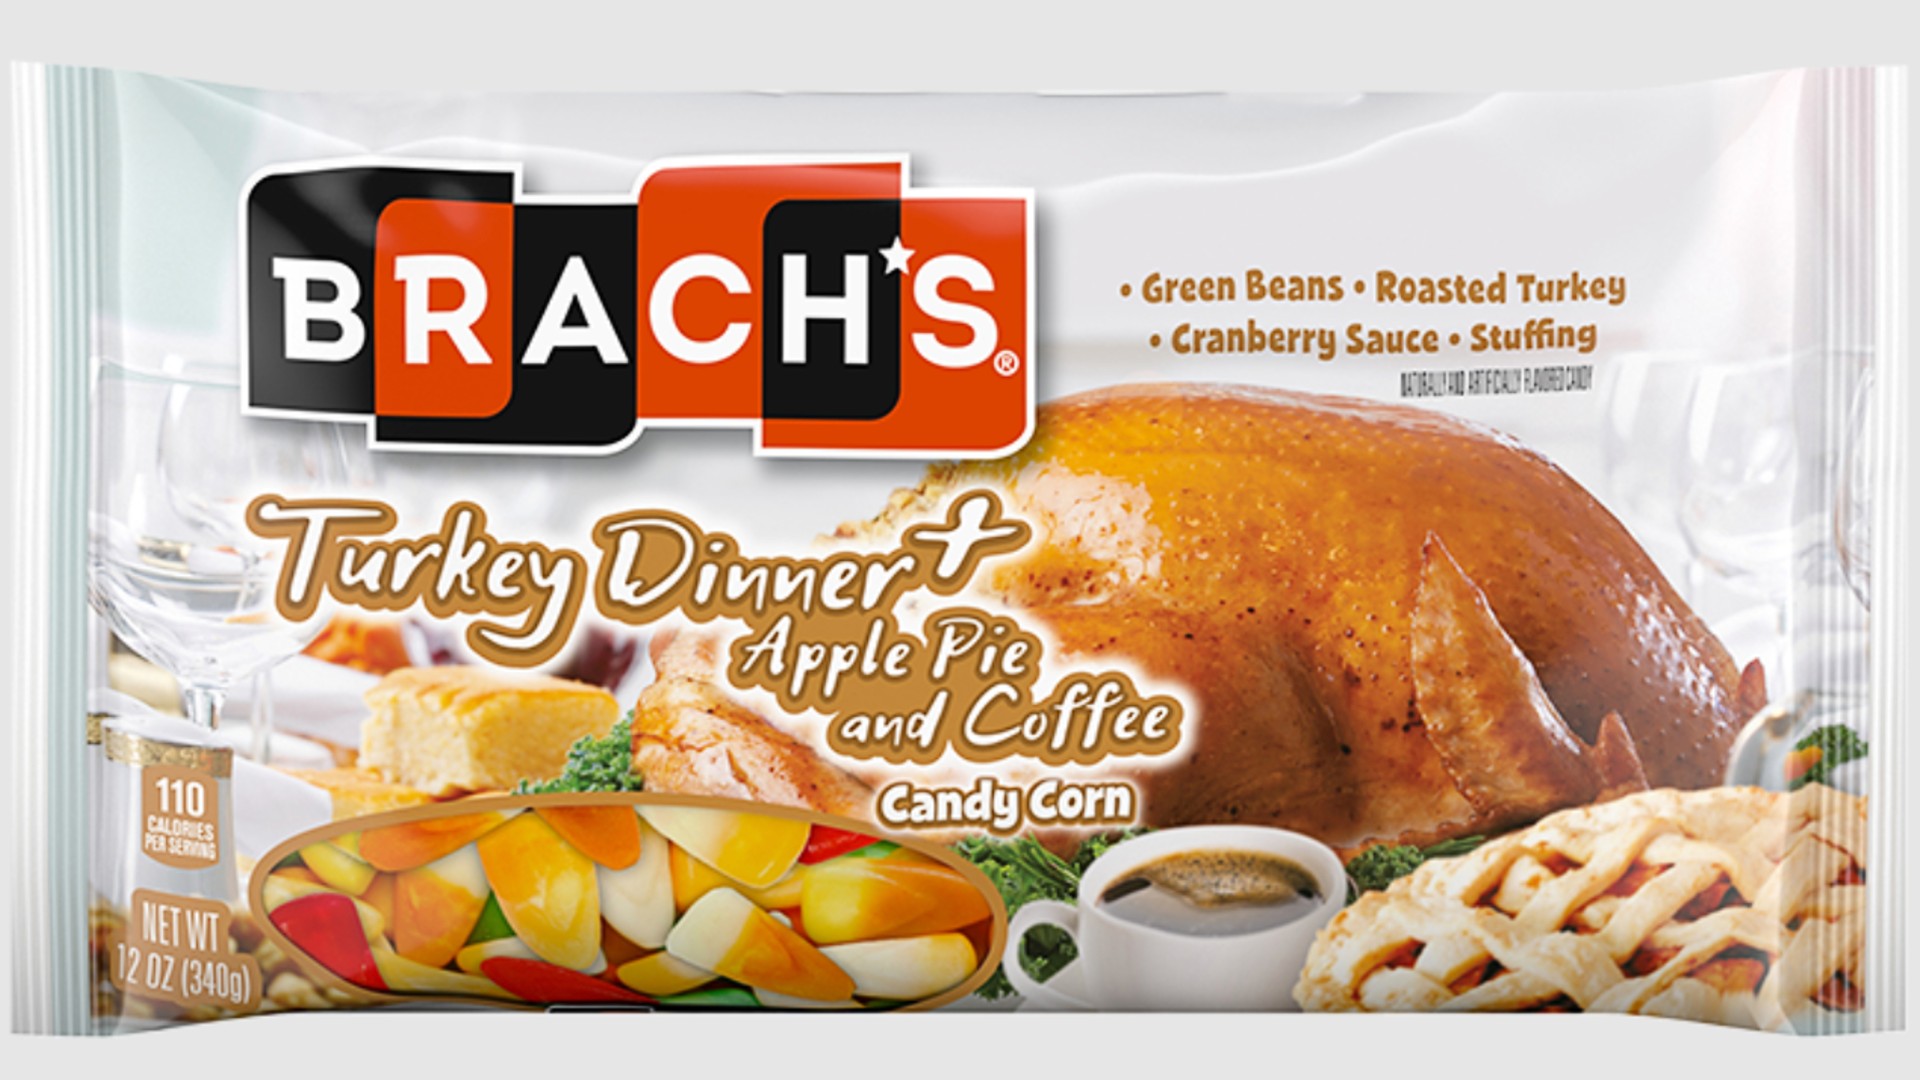 Brach's turkey dinner candy corn